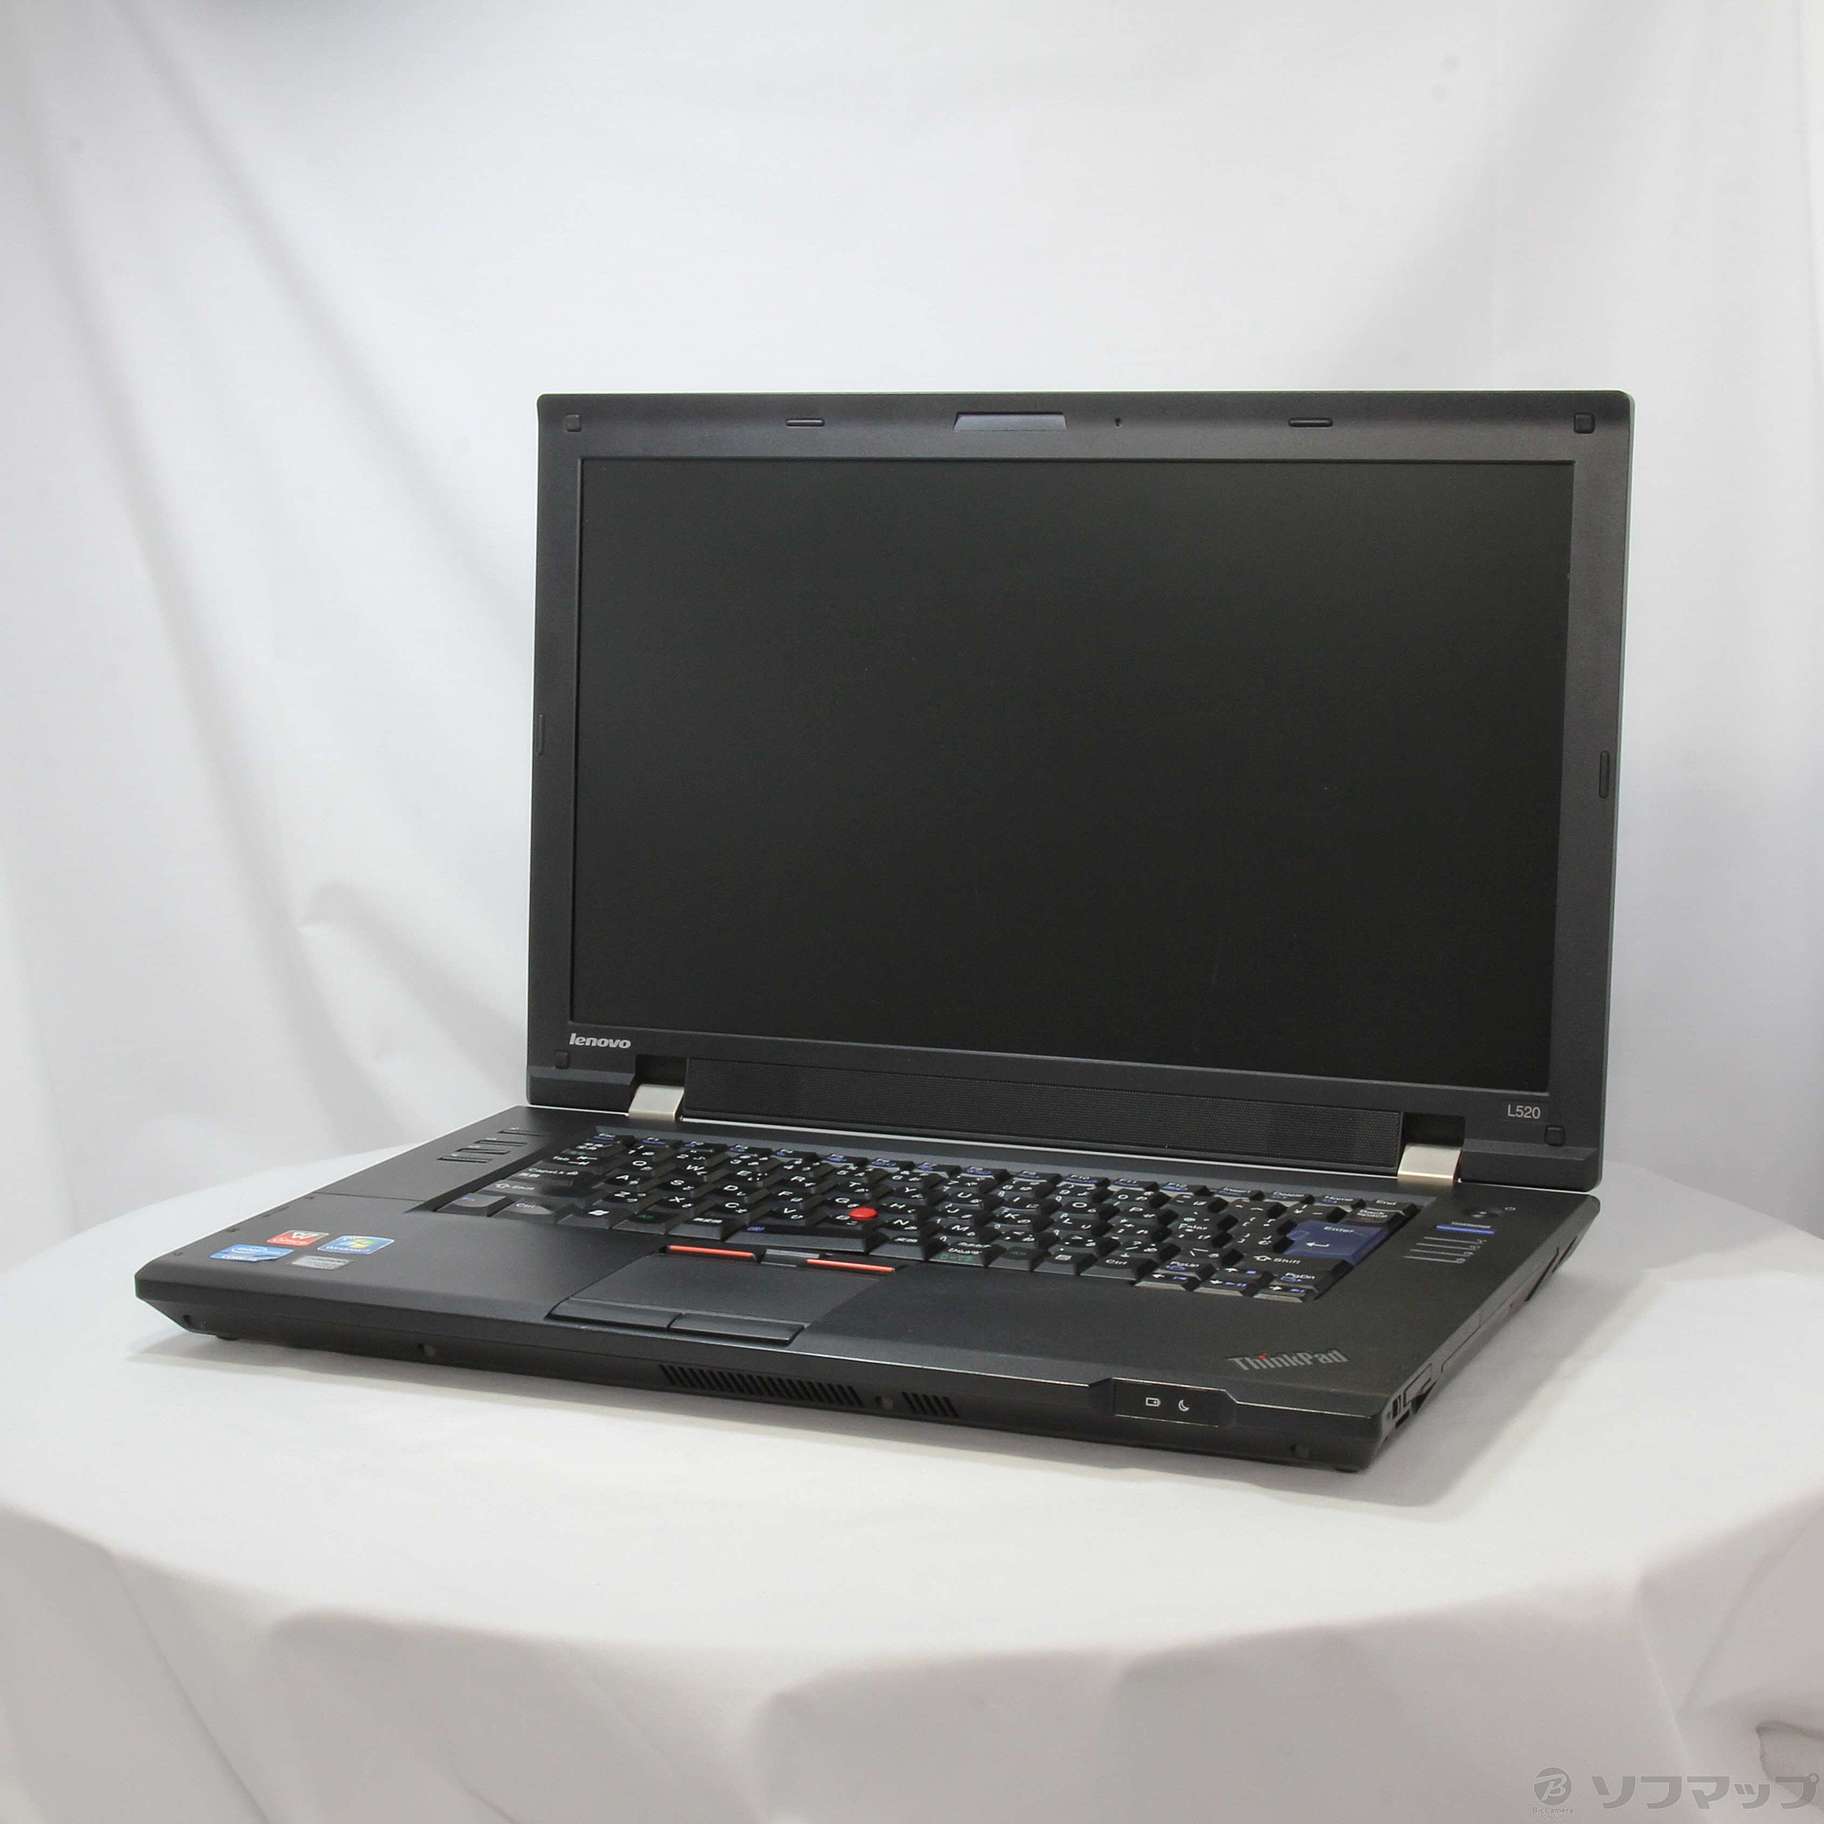 セール対象品 ThinkPad L520 5015A76